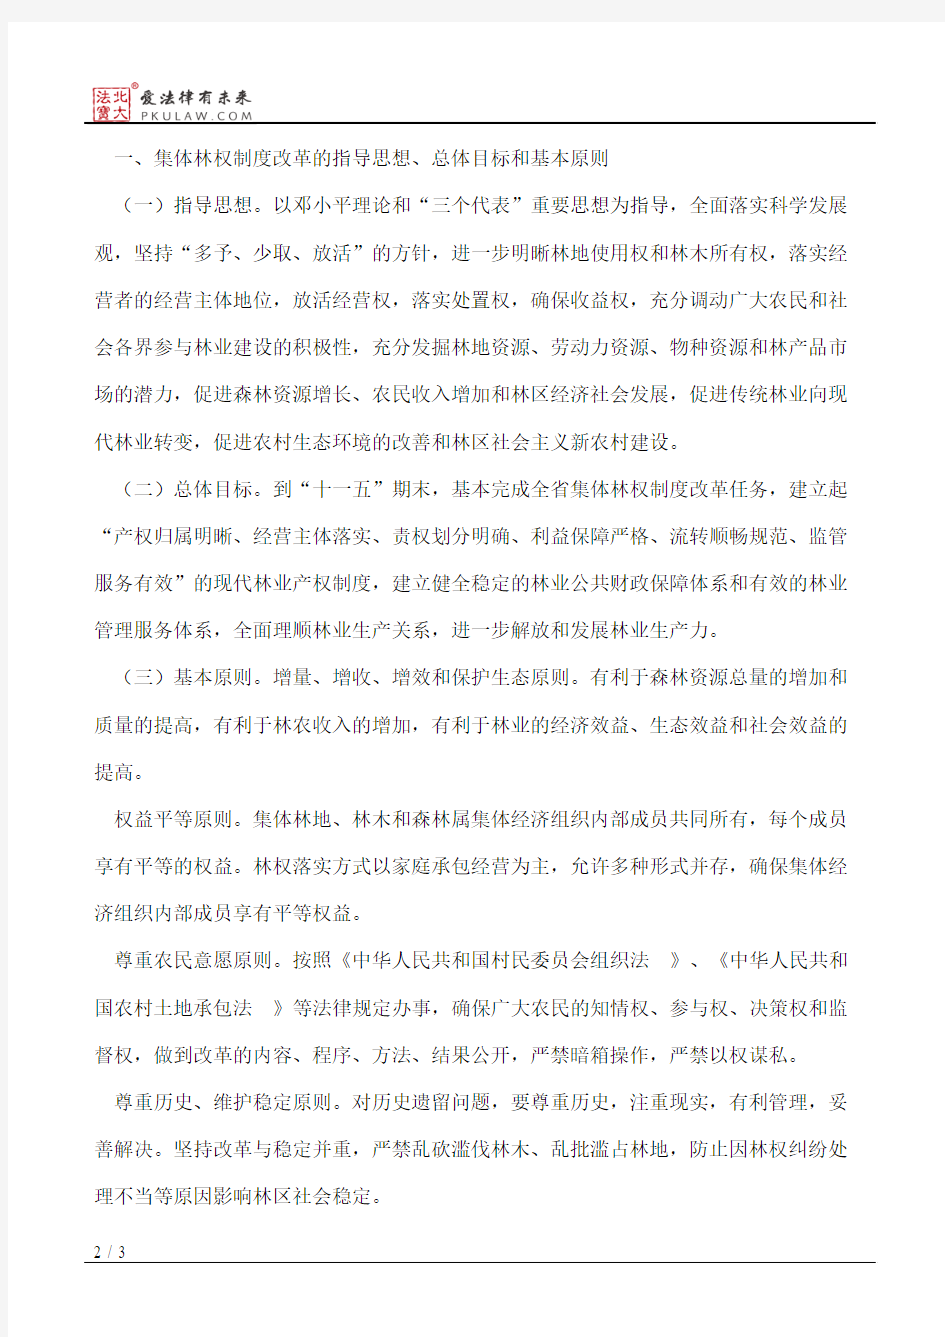 中共湖南省委、湖南省人民政府关于深化集体林权制度改革的意见